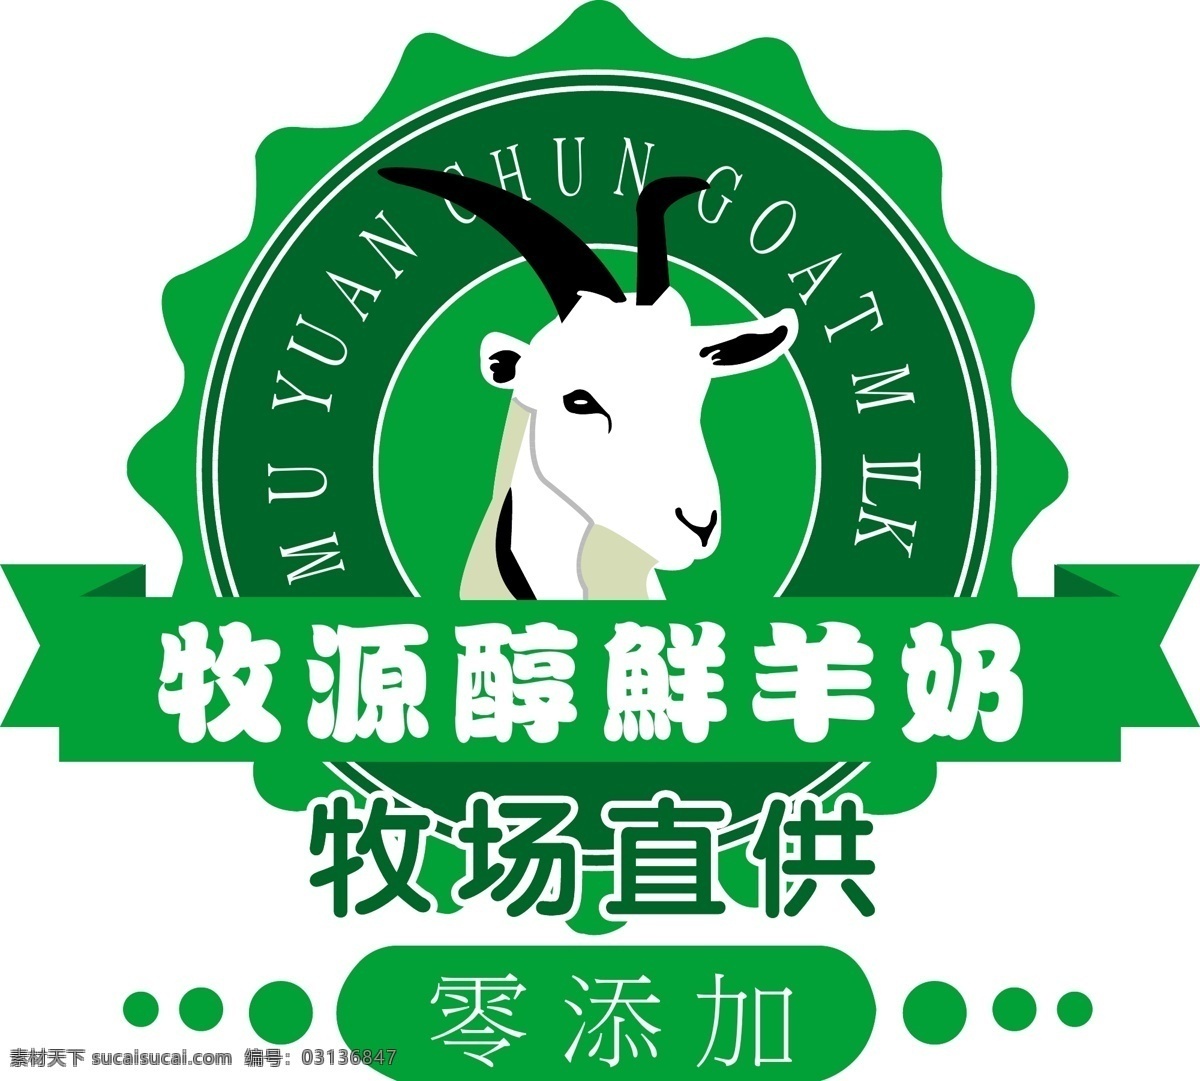 鲜羊奶标志 鲜羊奶 羊 logo 标志 绿色标志 logo设计